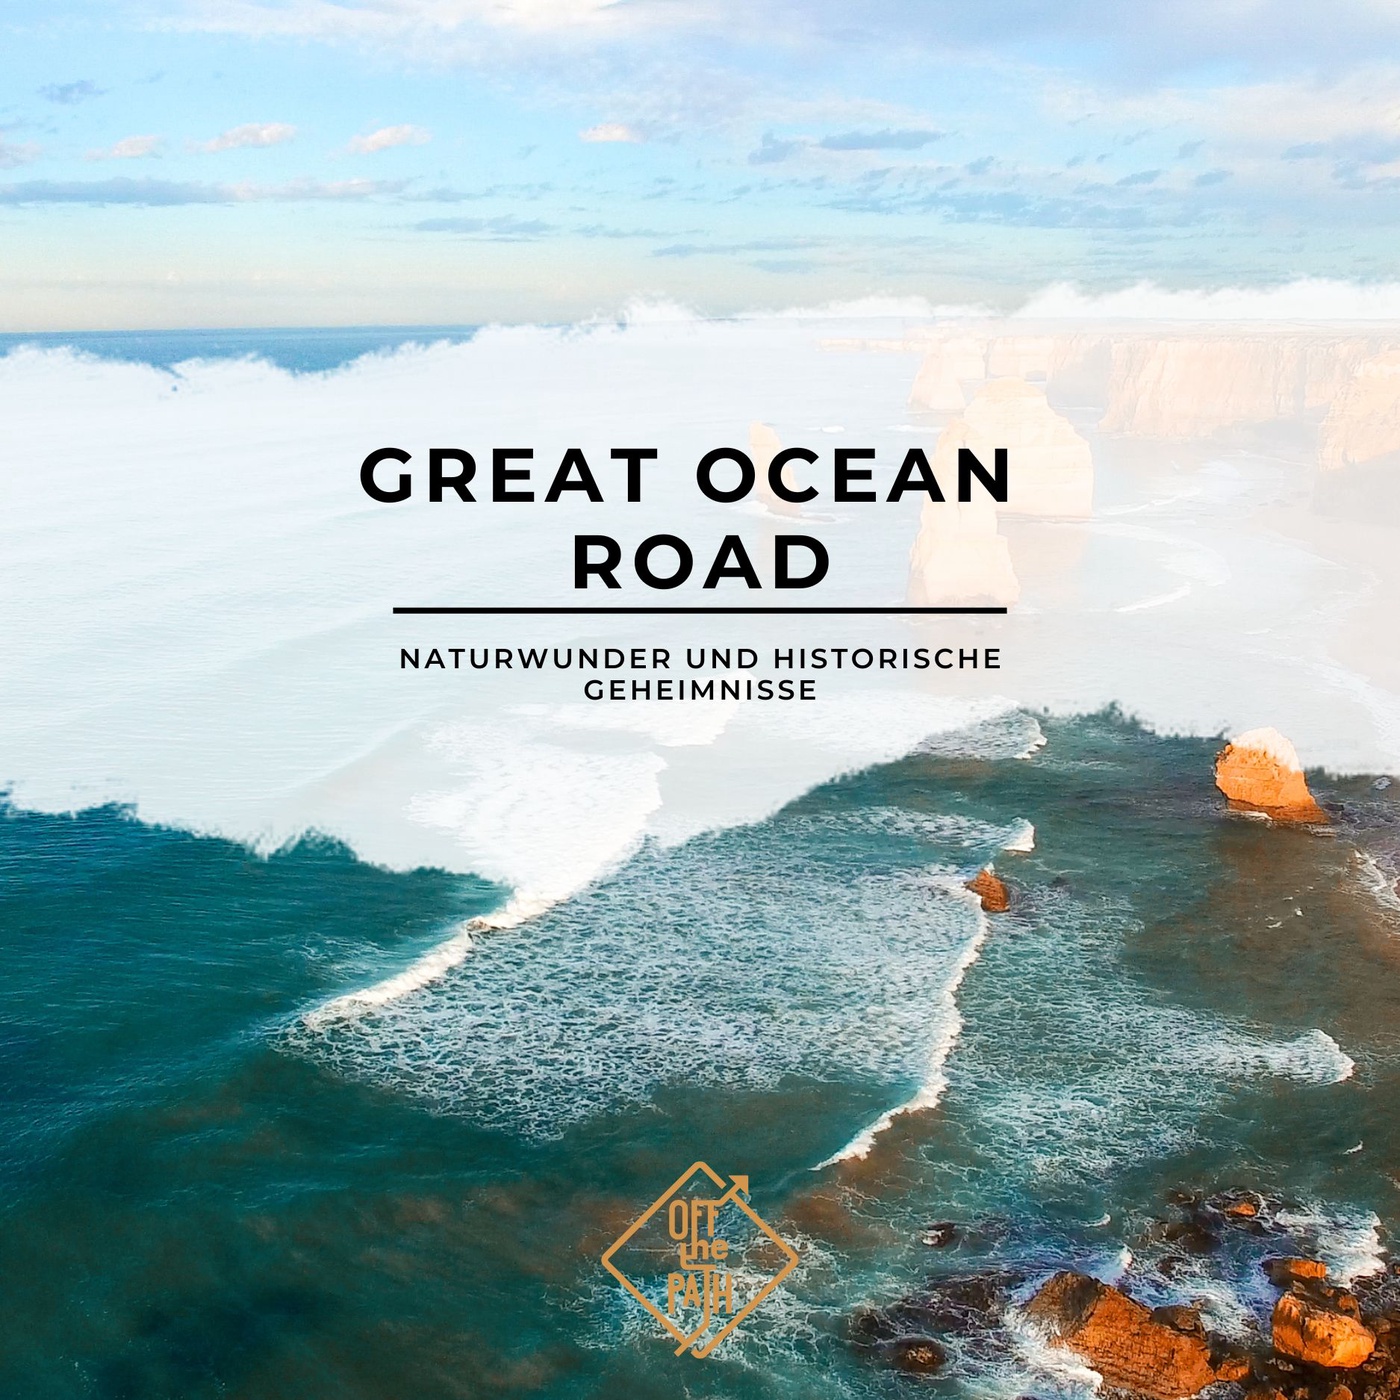 Naturwunder und Historische Geheimnisse: Unterwegs auf der Great Ocean Road